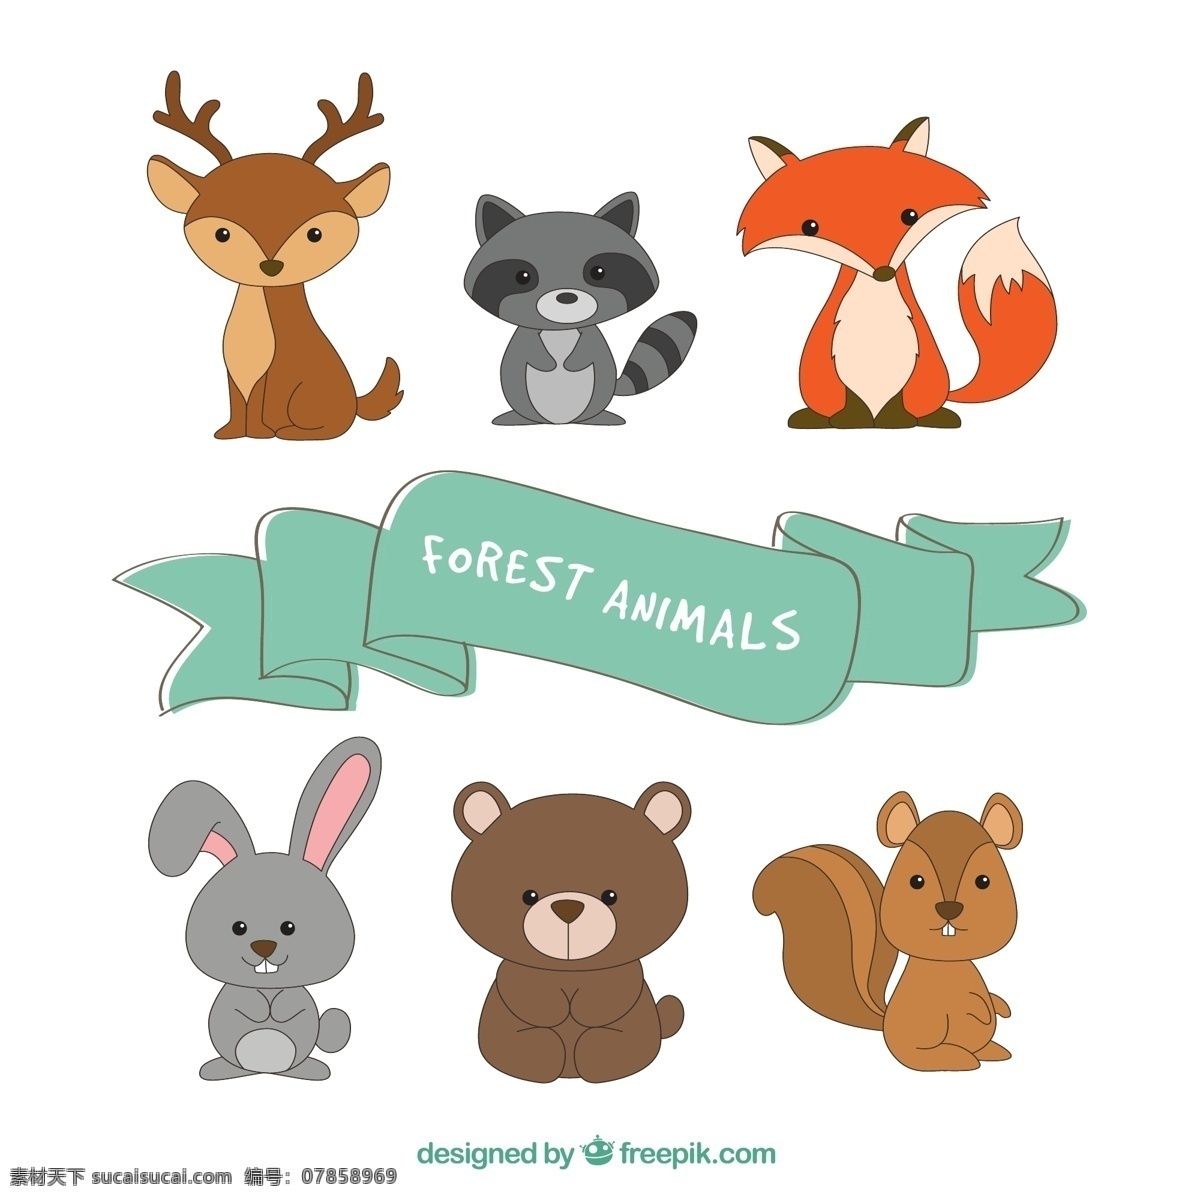 组 抽象 小 动物 元素 设计素材 创意设计 小动物 卡通 可爱 矢量素材